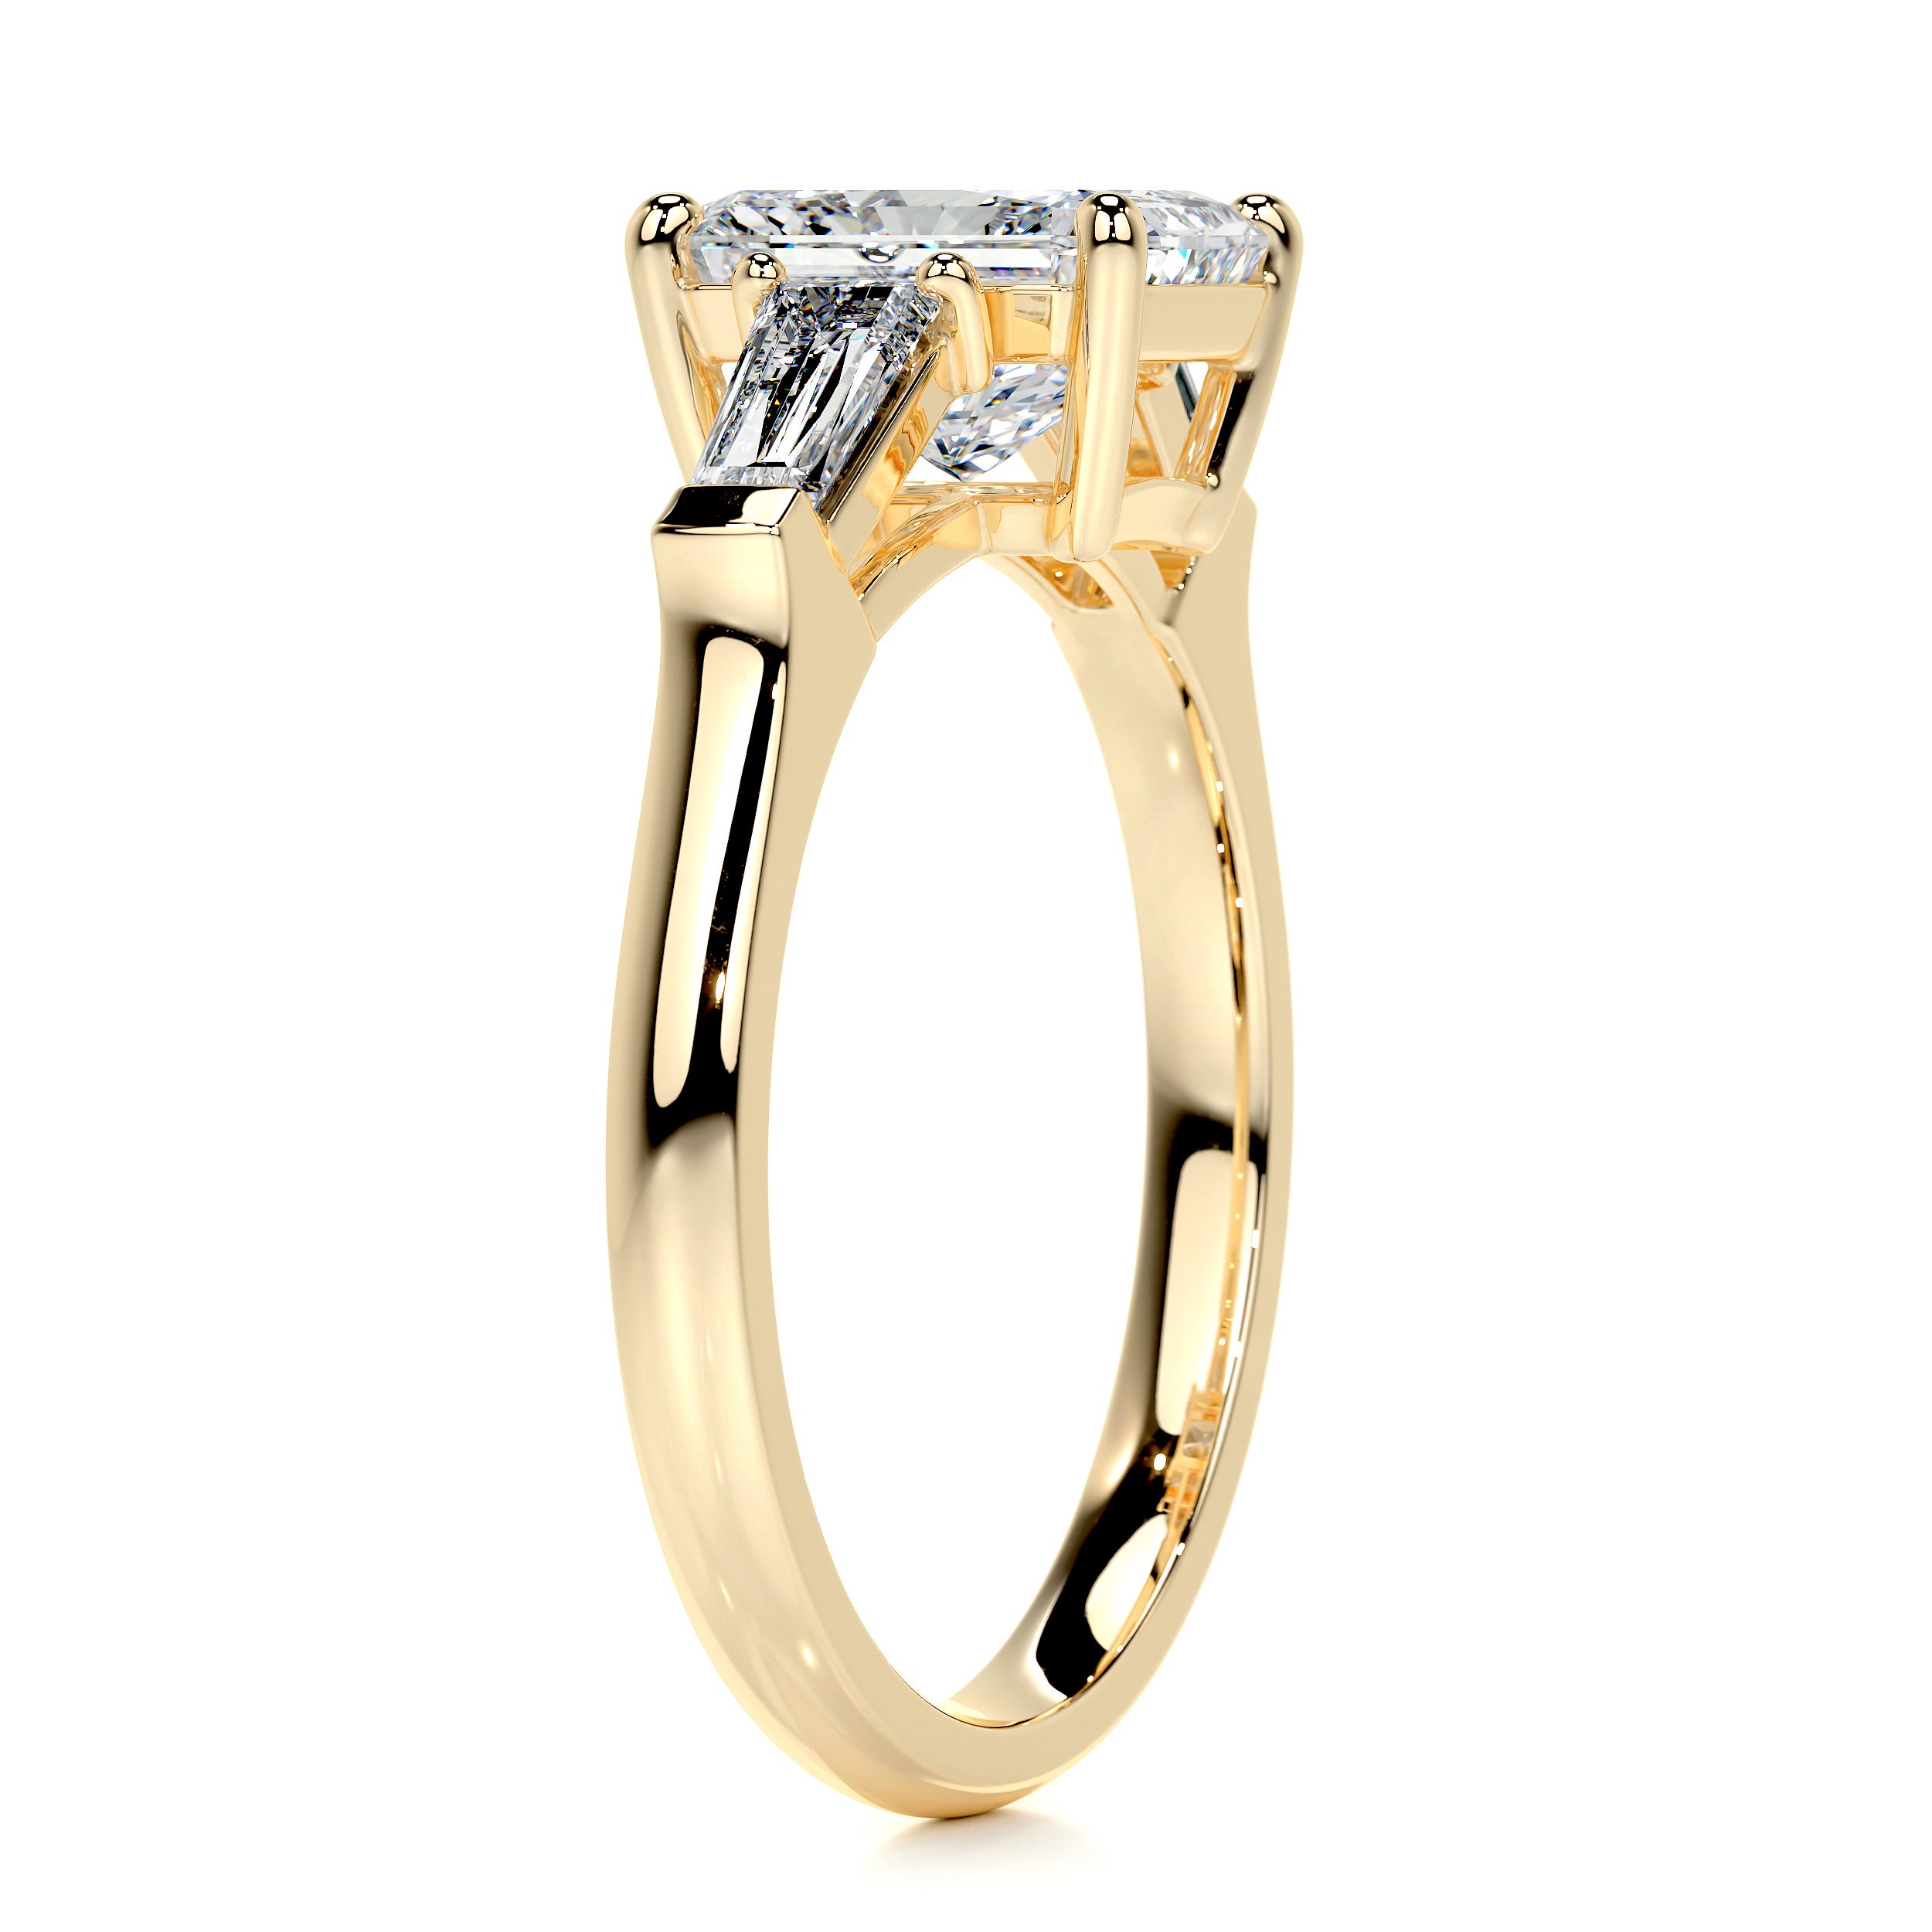 Skylar Diamond Engagement Ring   (2.5 Carat) -18K Yellow Gold